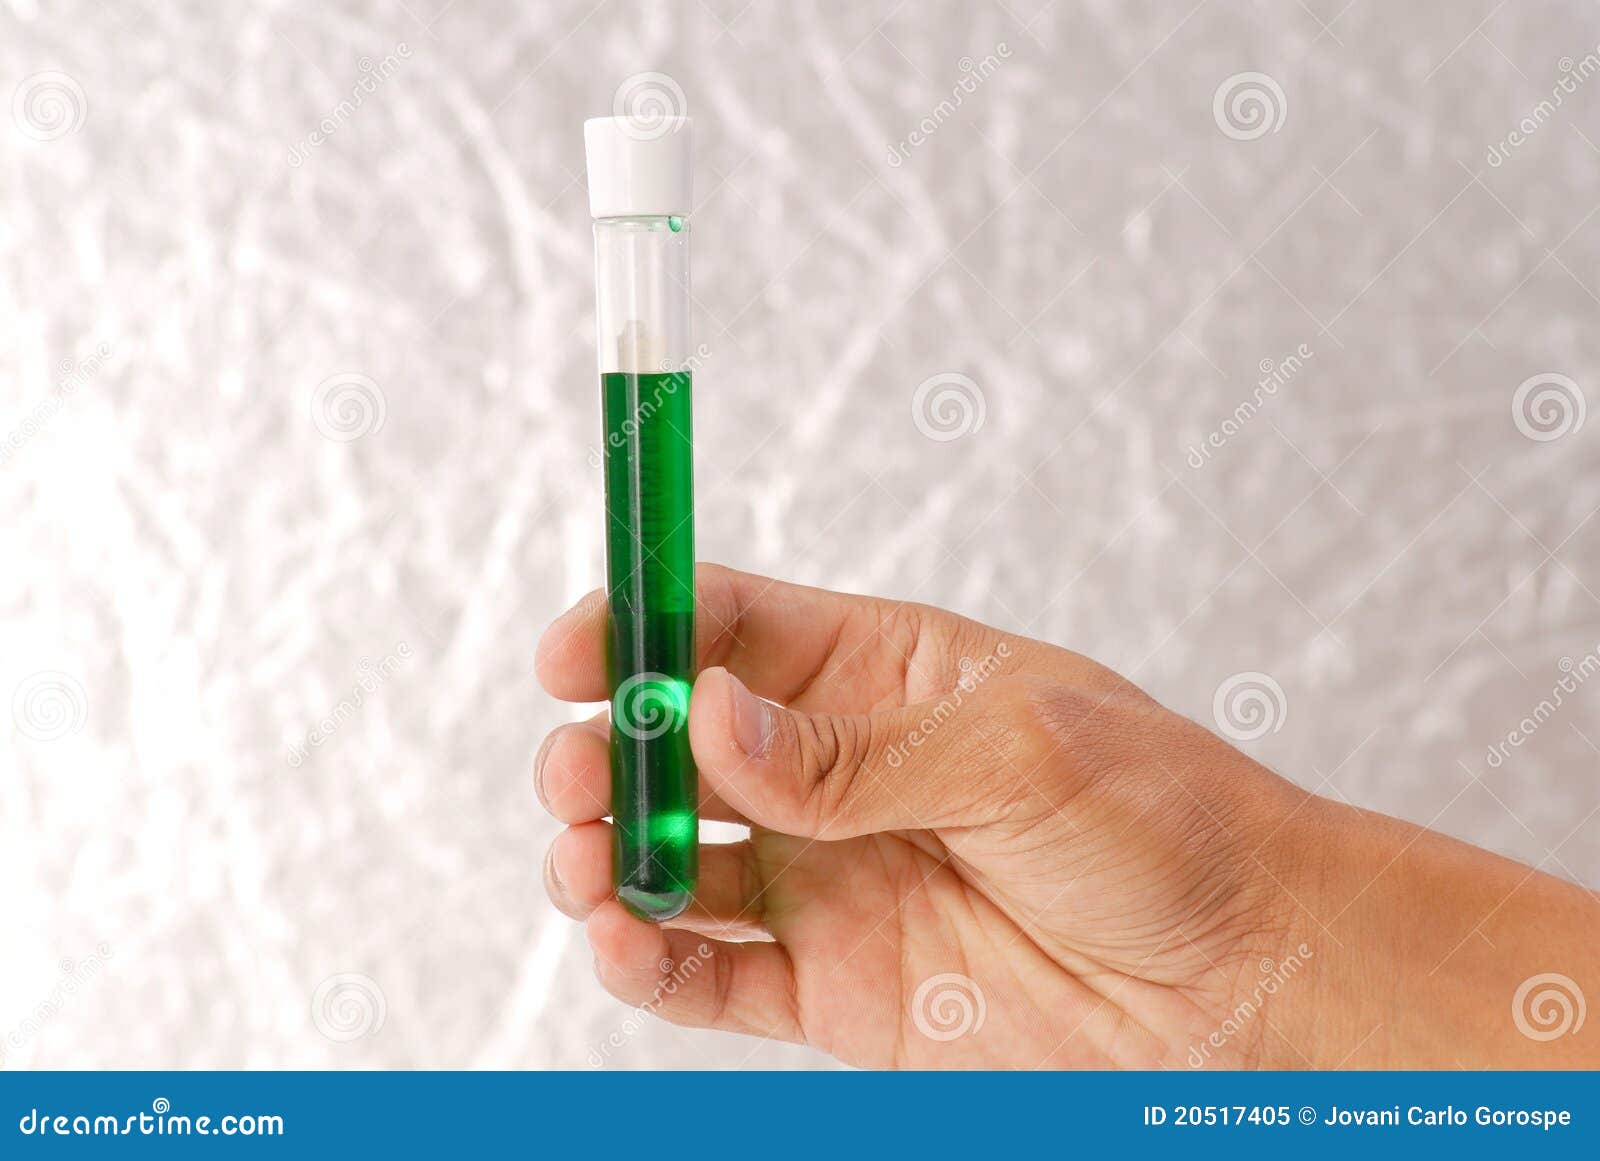 green liquid antidote